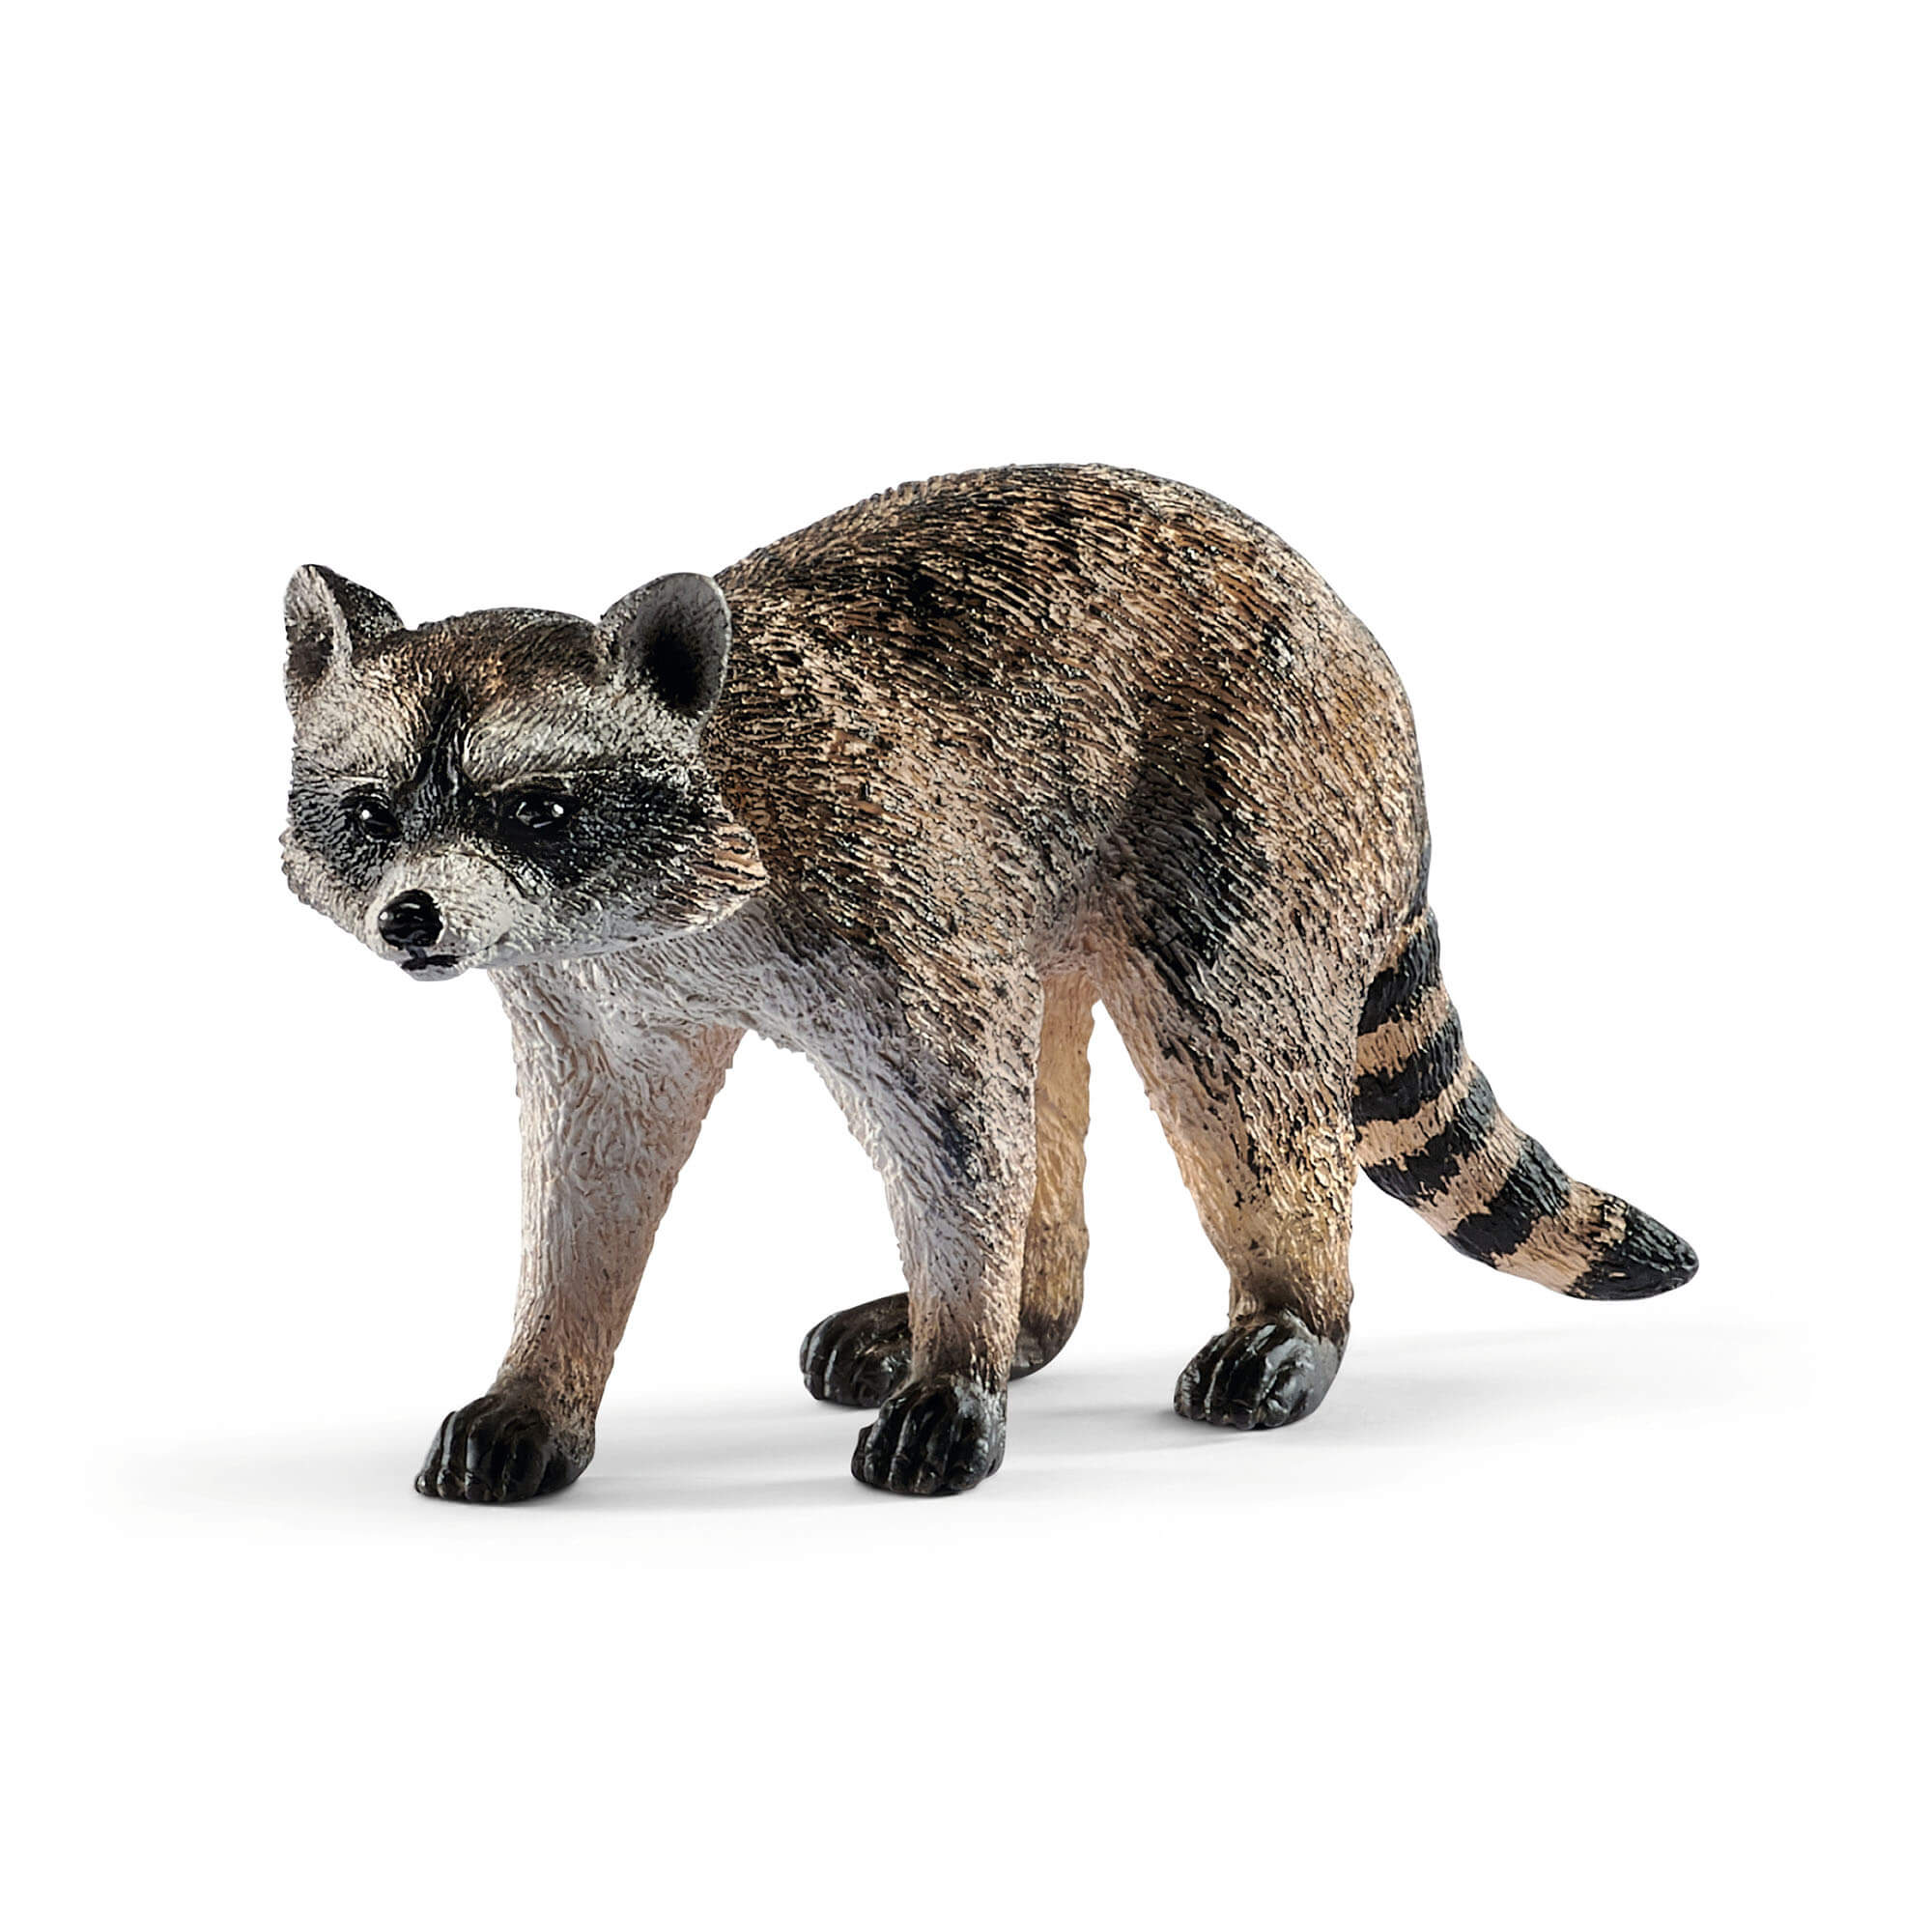 Schleich Wild Life Raccoon Animal Figure